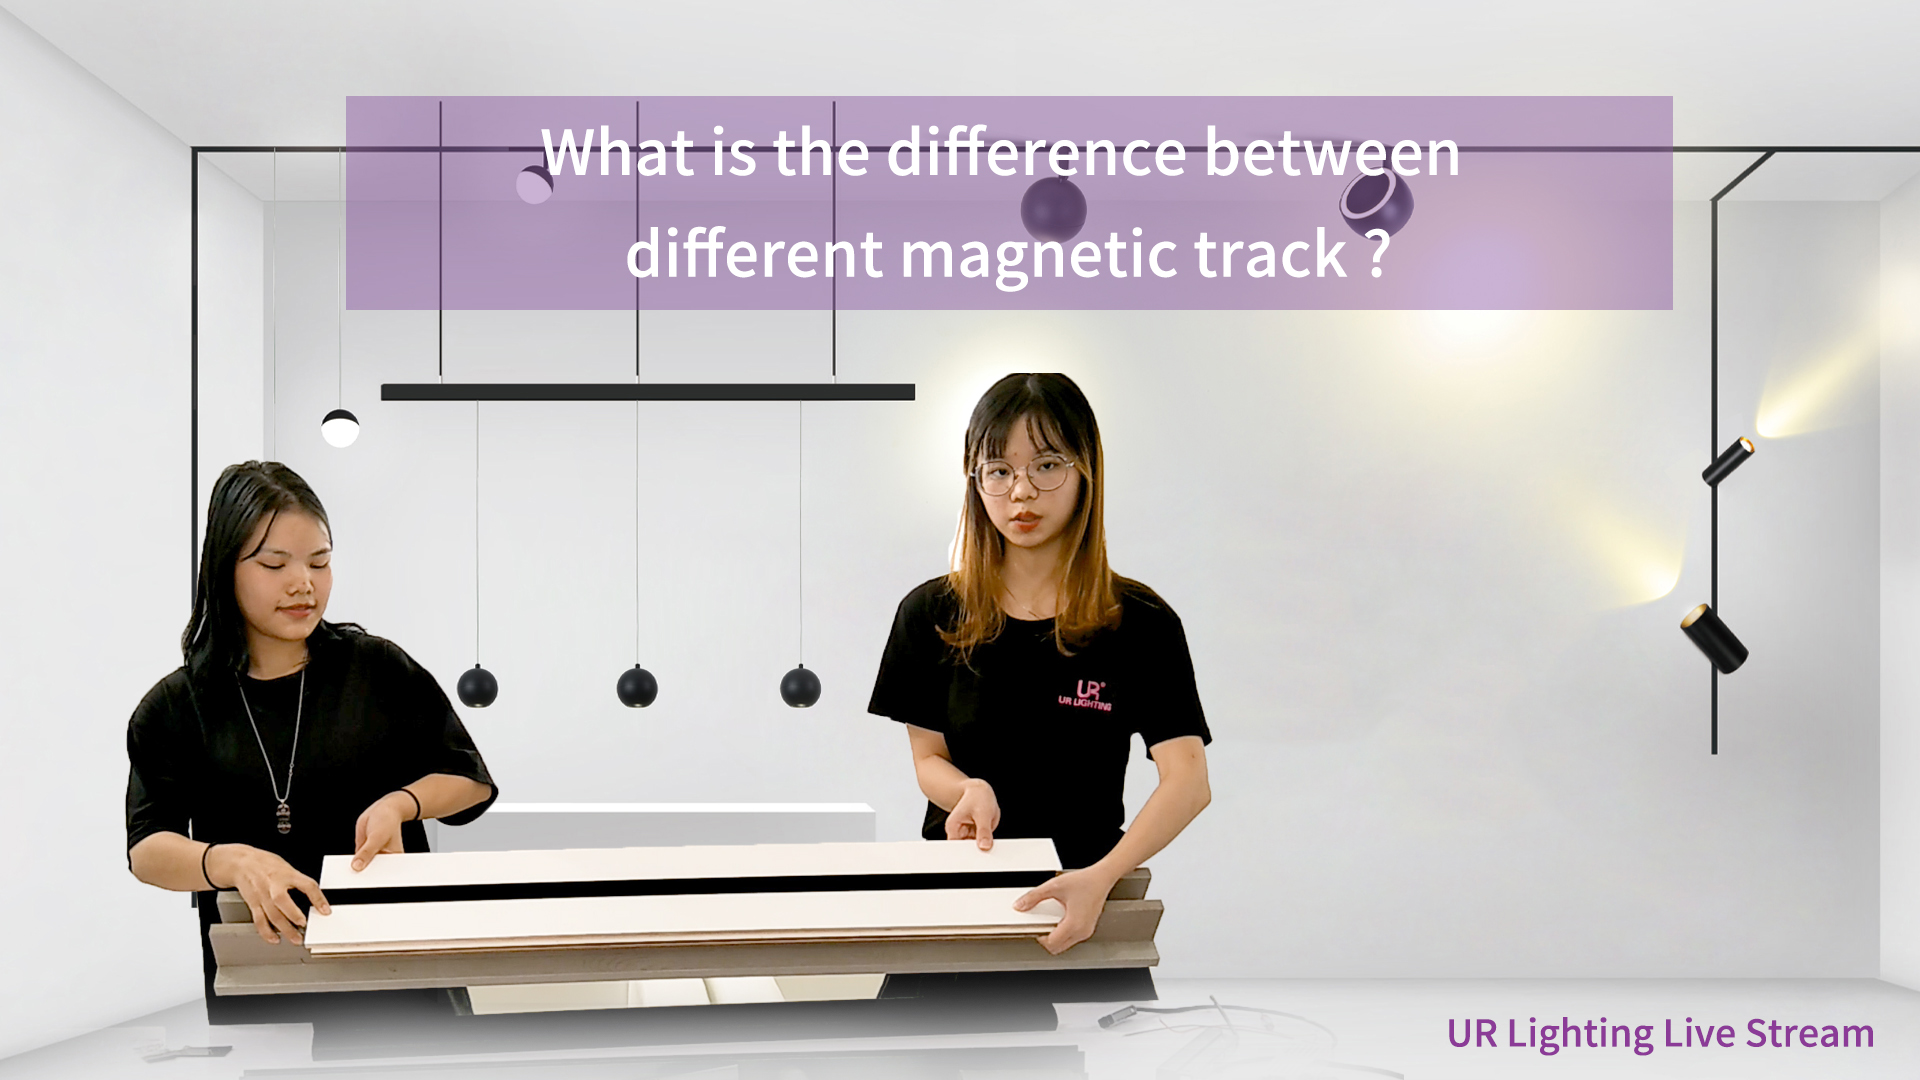 Mi a különbség a különböző mágneses pálya között?